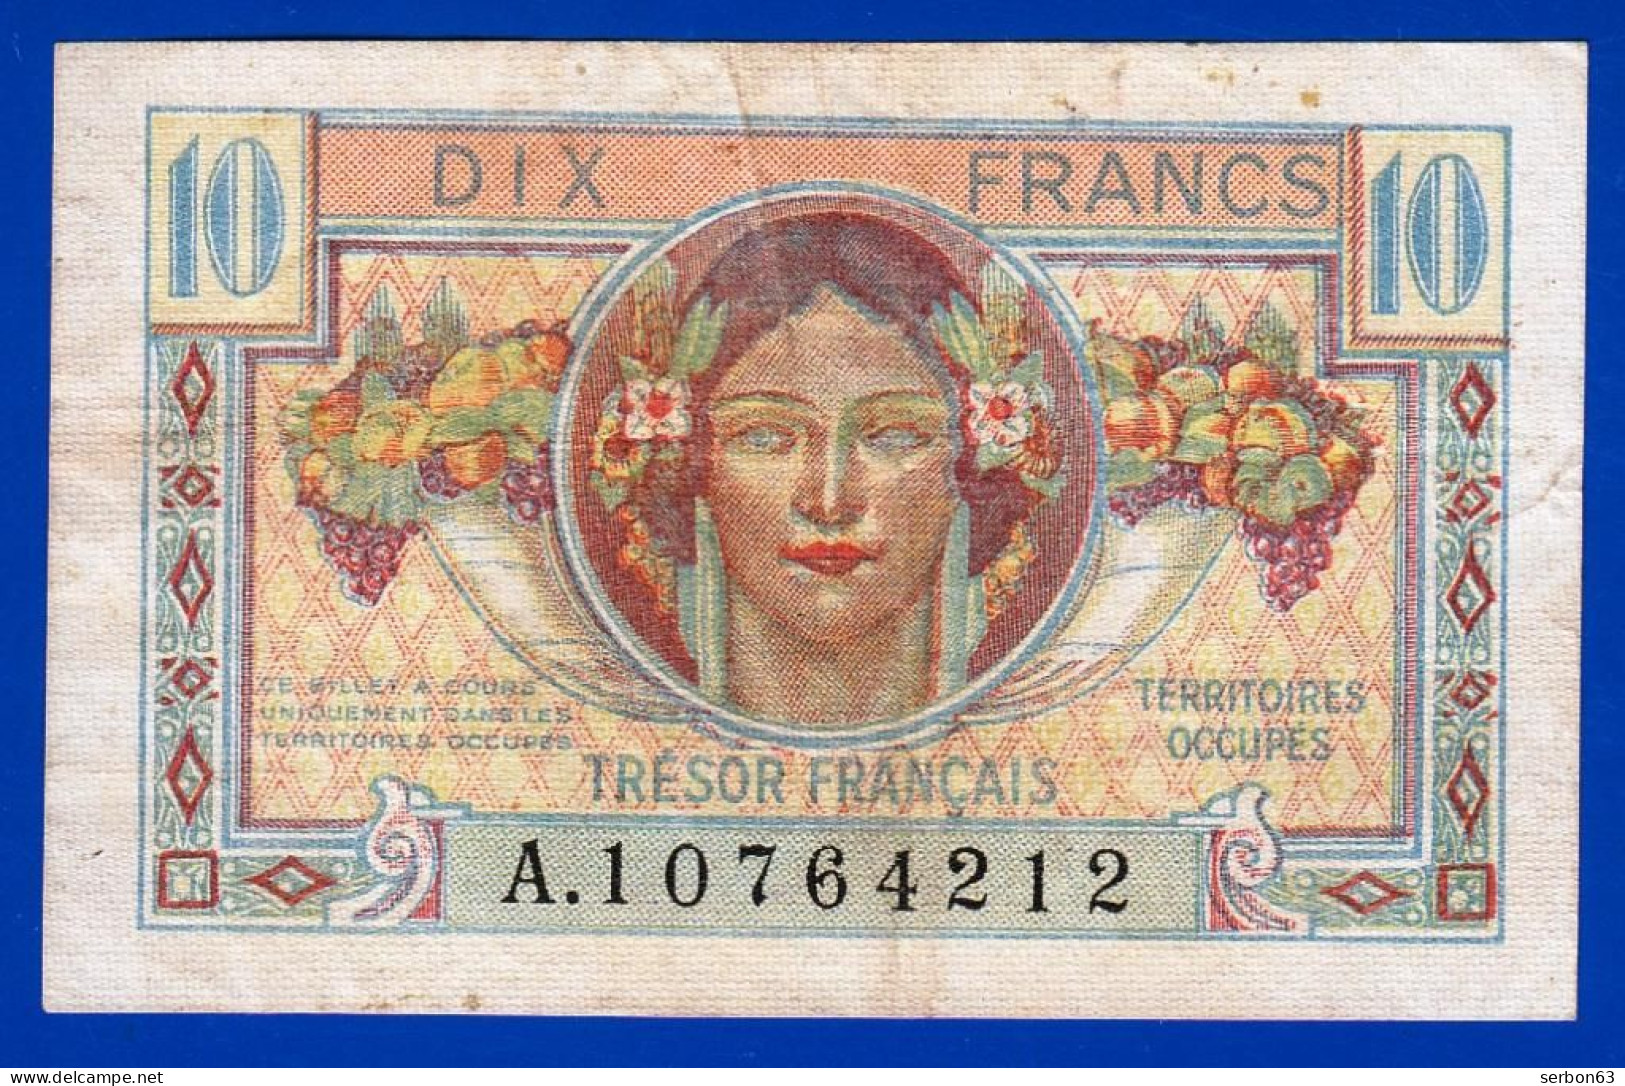 10 FRANCS BILLET DU TRÉSOR FRANÇAIS EMISSION POUR LES TERRITOIRES OCCUPES 1947 A. 10764212 Serbon63 - 1947 Tesoro Francese